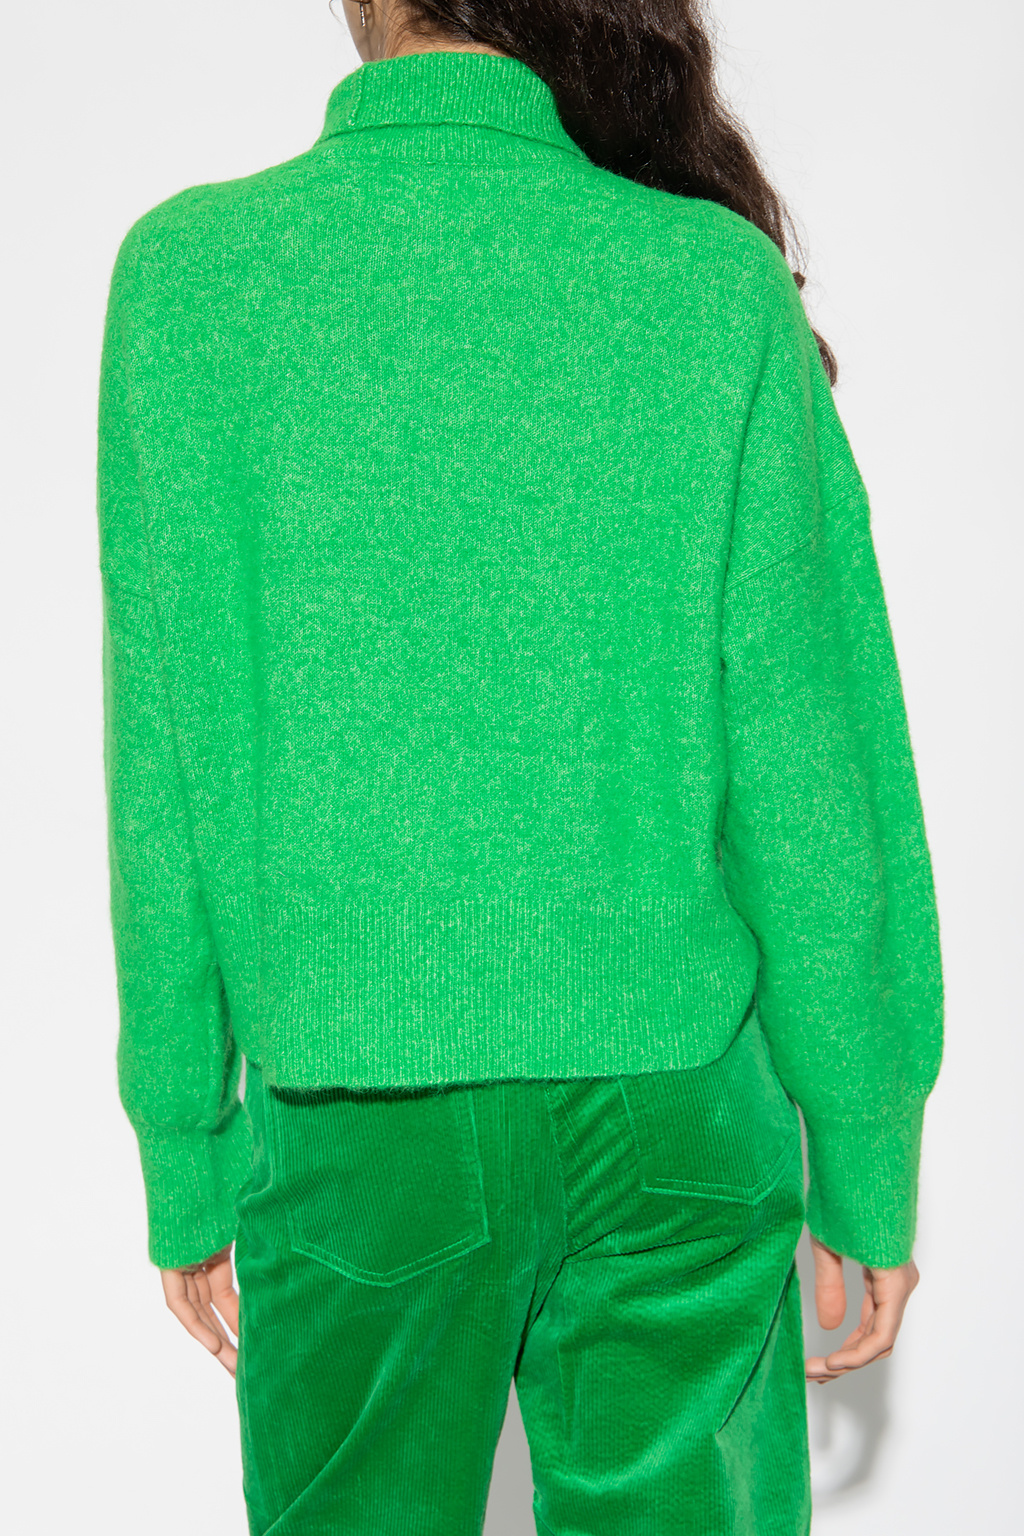 Samsøe Samsøe ‘Nola’ loose-fitting turtleneck sweater